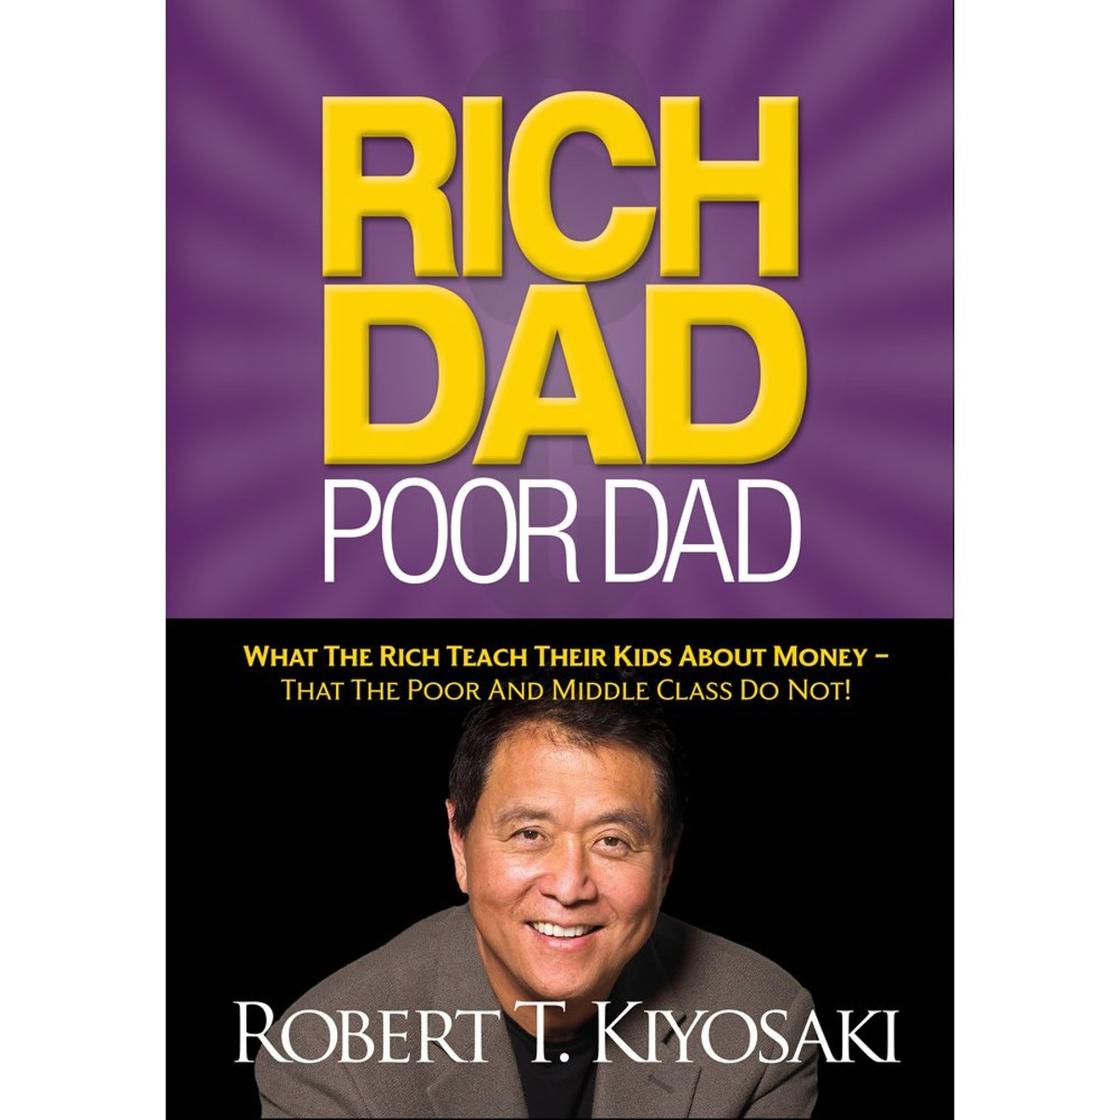 Обложка книги Роберта Кийосаки «Богатый папа, бедный папа»